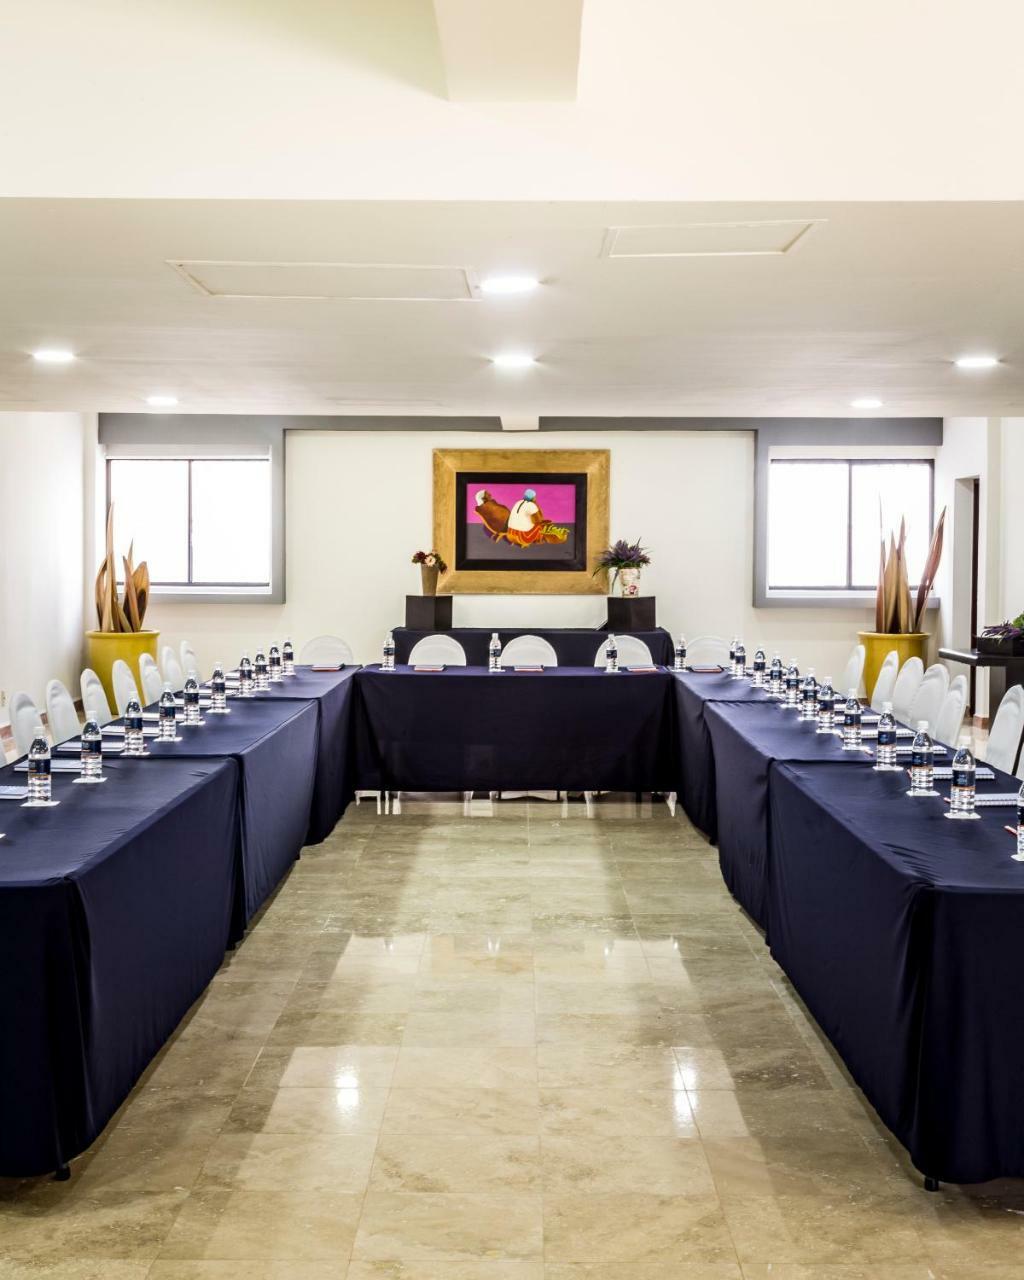 Imperio de Angeles Executive León by Real de Minas Business Class Exterior foto